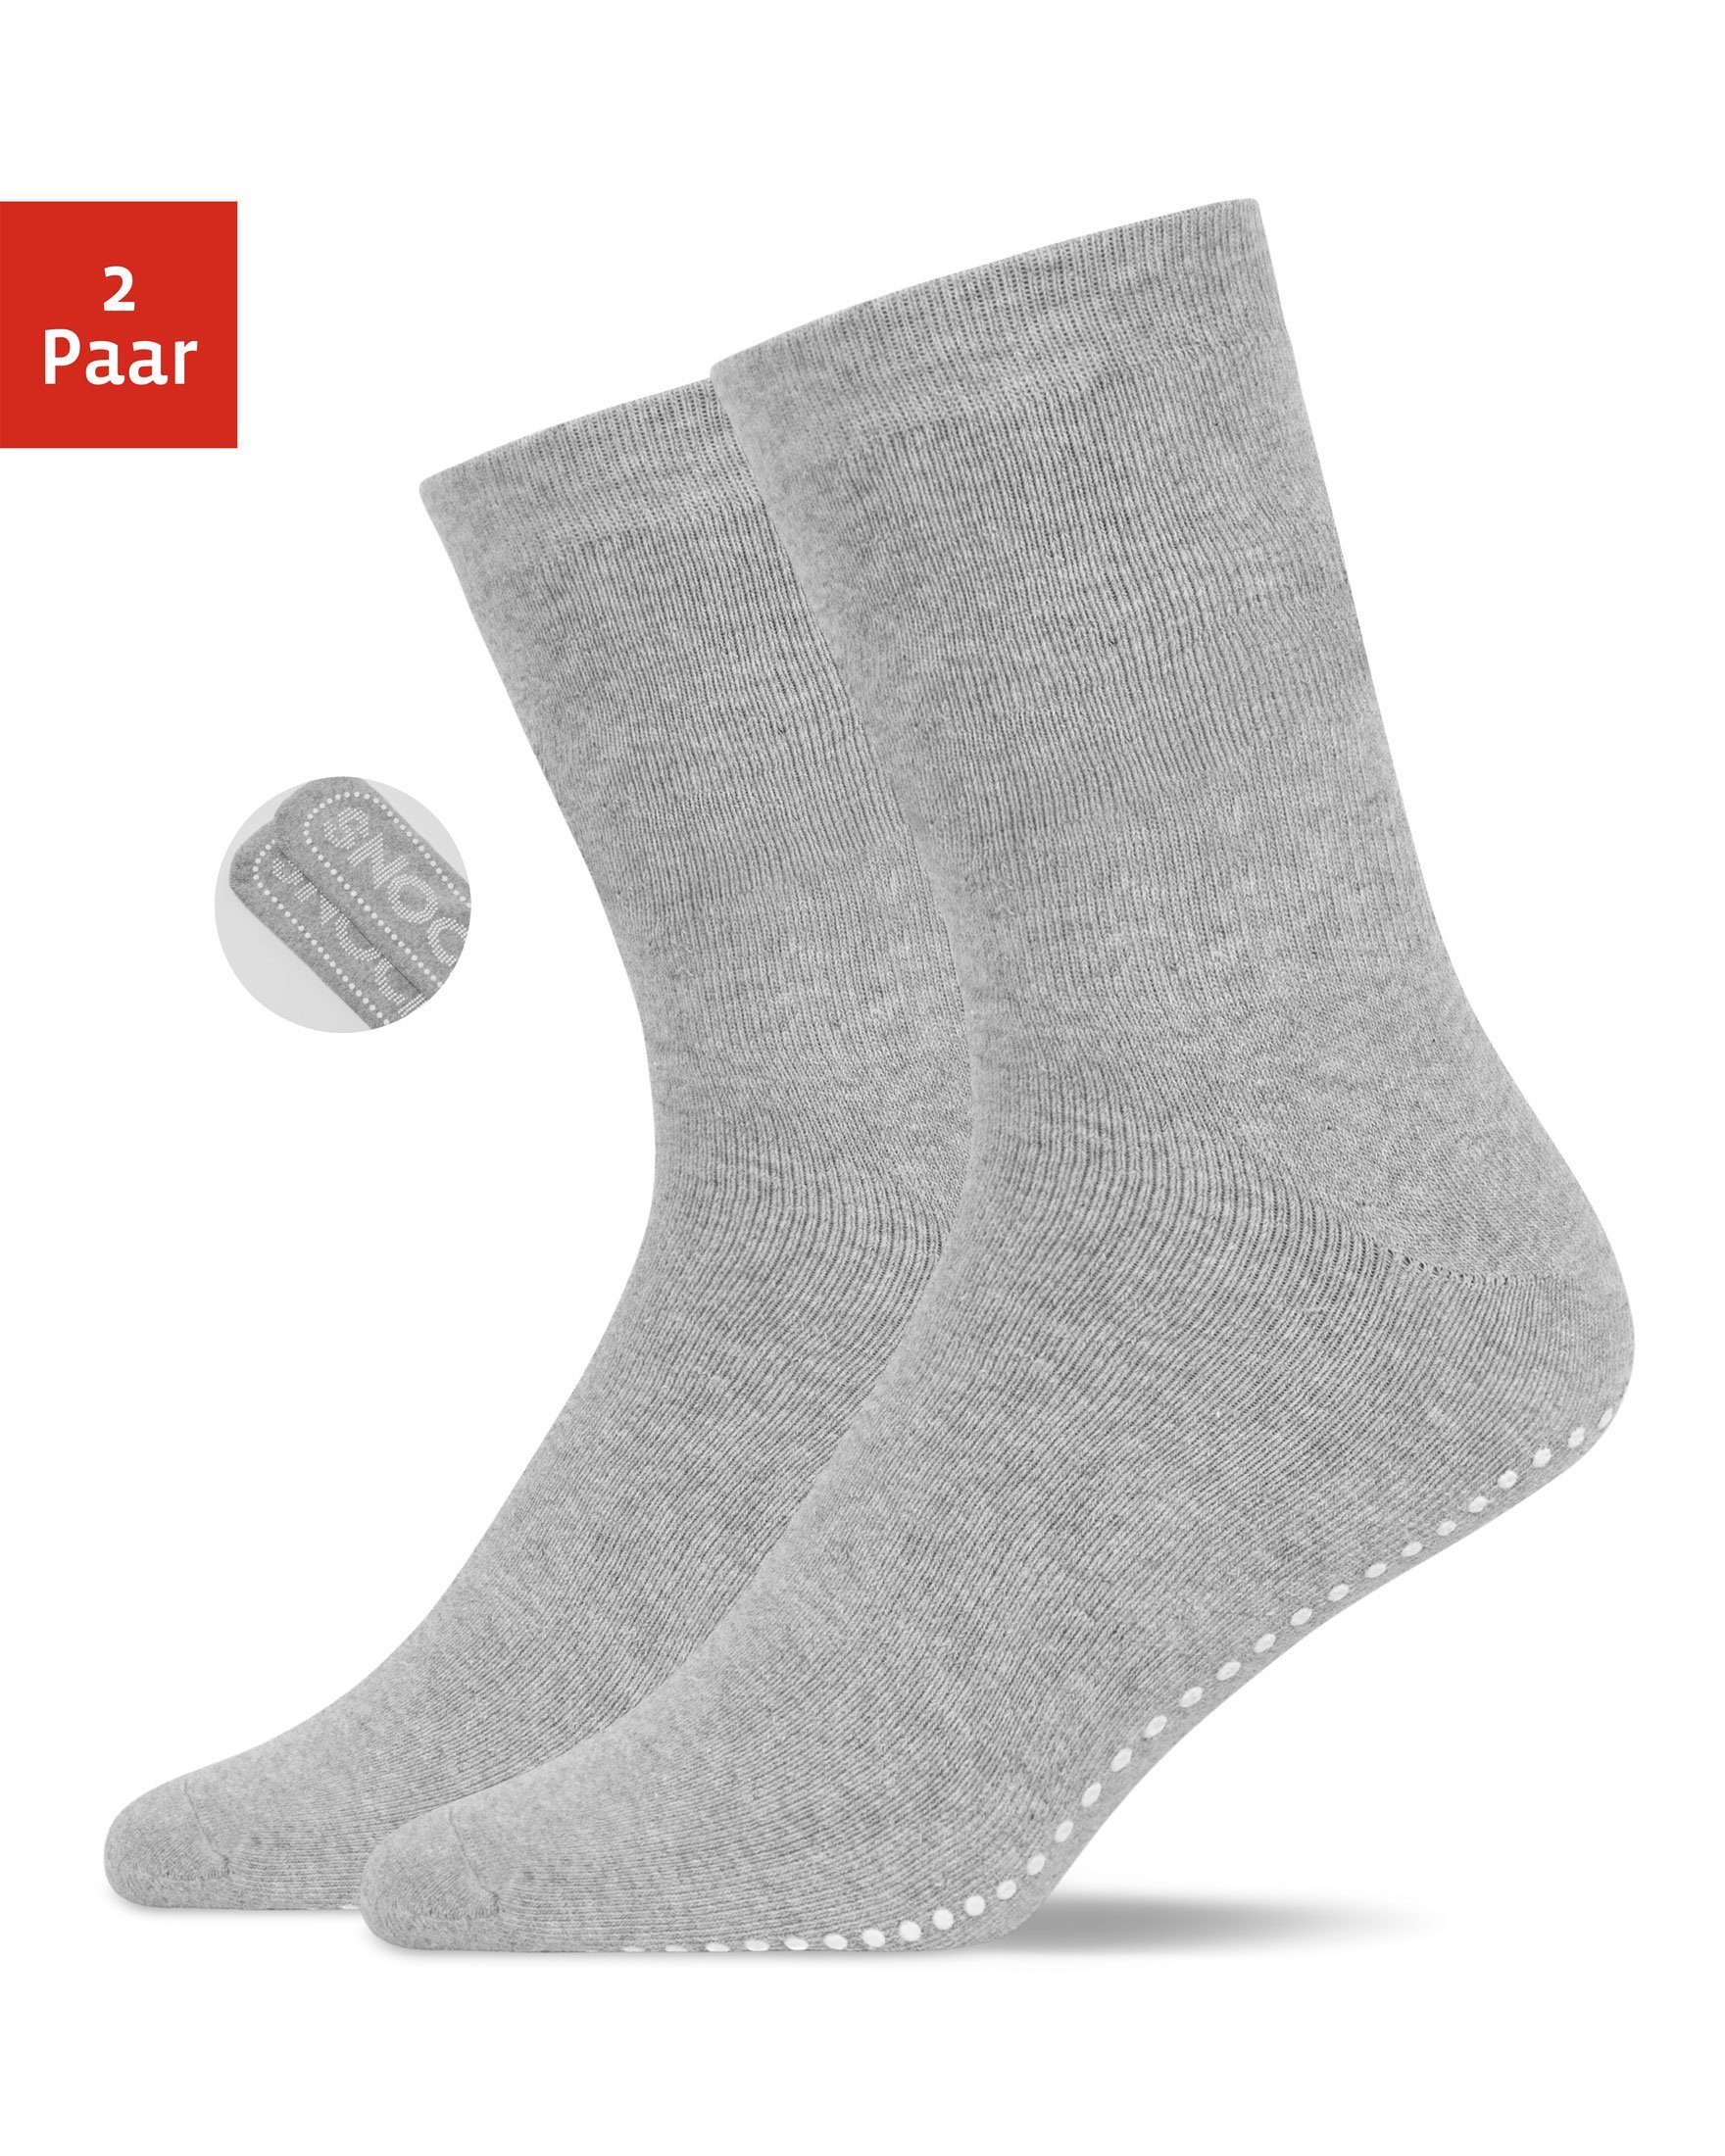 SNOCKS ABS-Socken Anti-Rutsch Socken Damen & Herren (2-Paar) aus Bio-Baumwolle, Anti-Rutsch-Noppen in süßem Design Grau (SNOCKS)